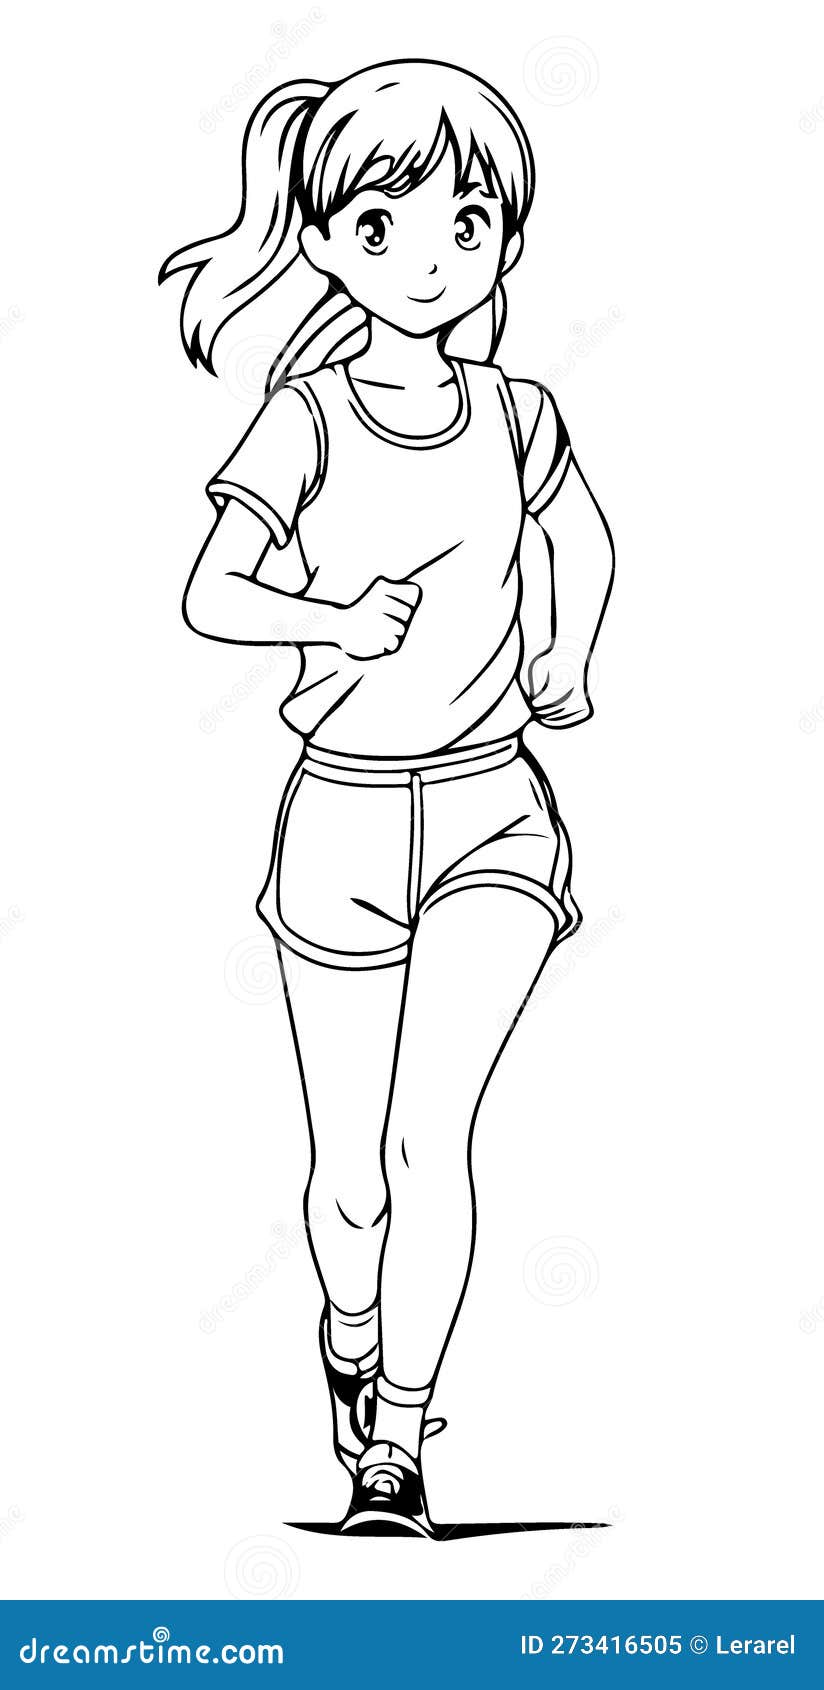 A Garota Está Correndo. Desenho Do Desenho De Colorir Kawaii